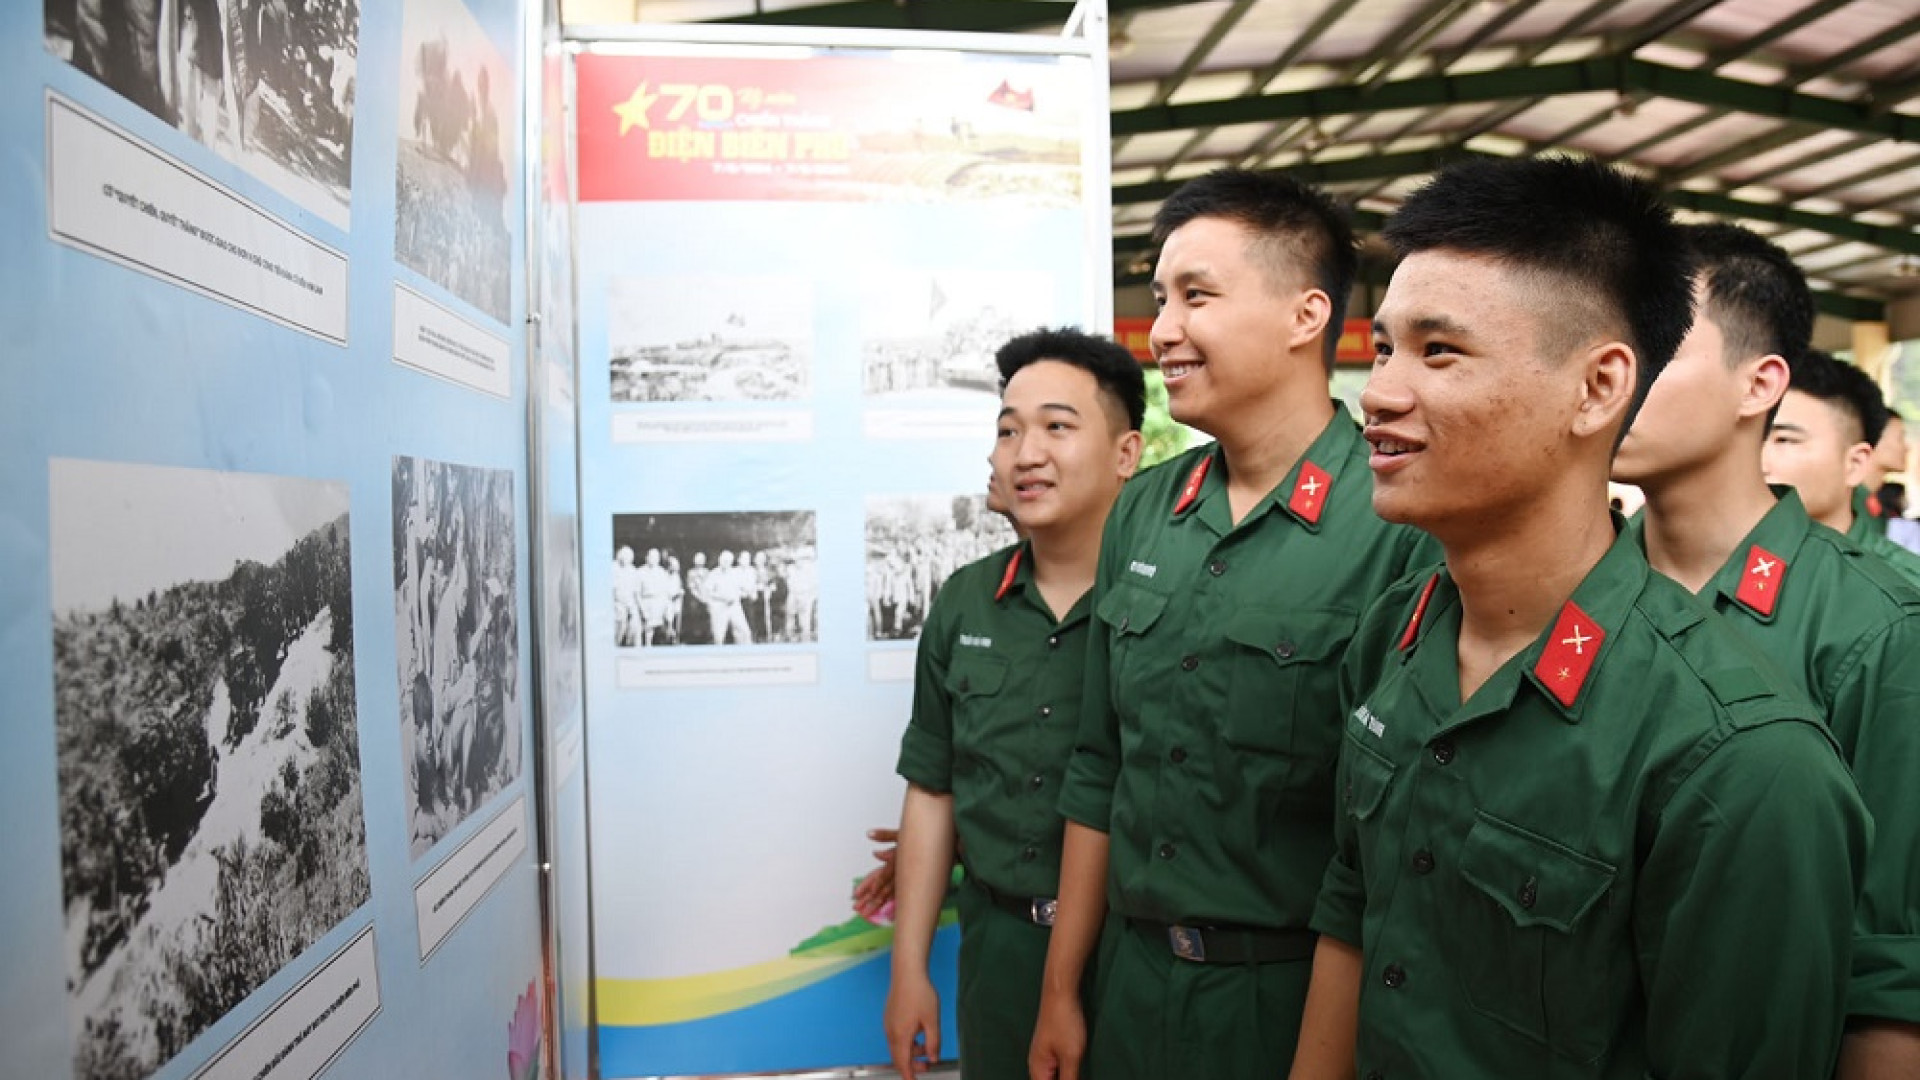 Triển lãm lưu động chào mừng kỷ niệm 70 năm Chiến thắng Điện Biên Phủ tại tỉnh Quảng Ninh